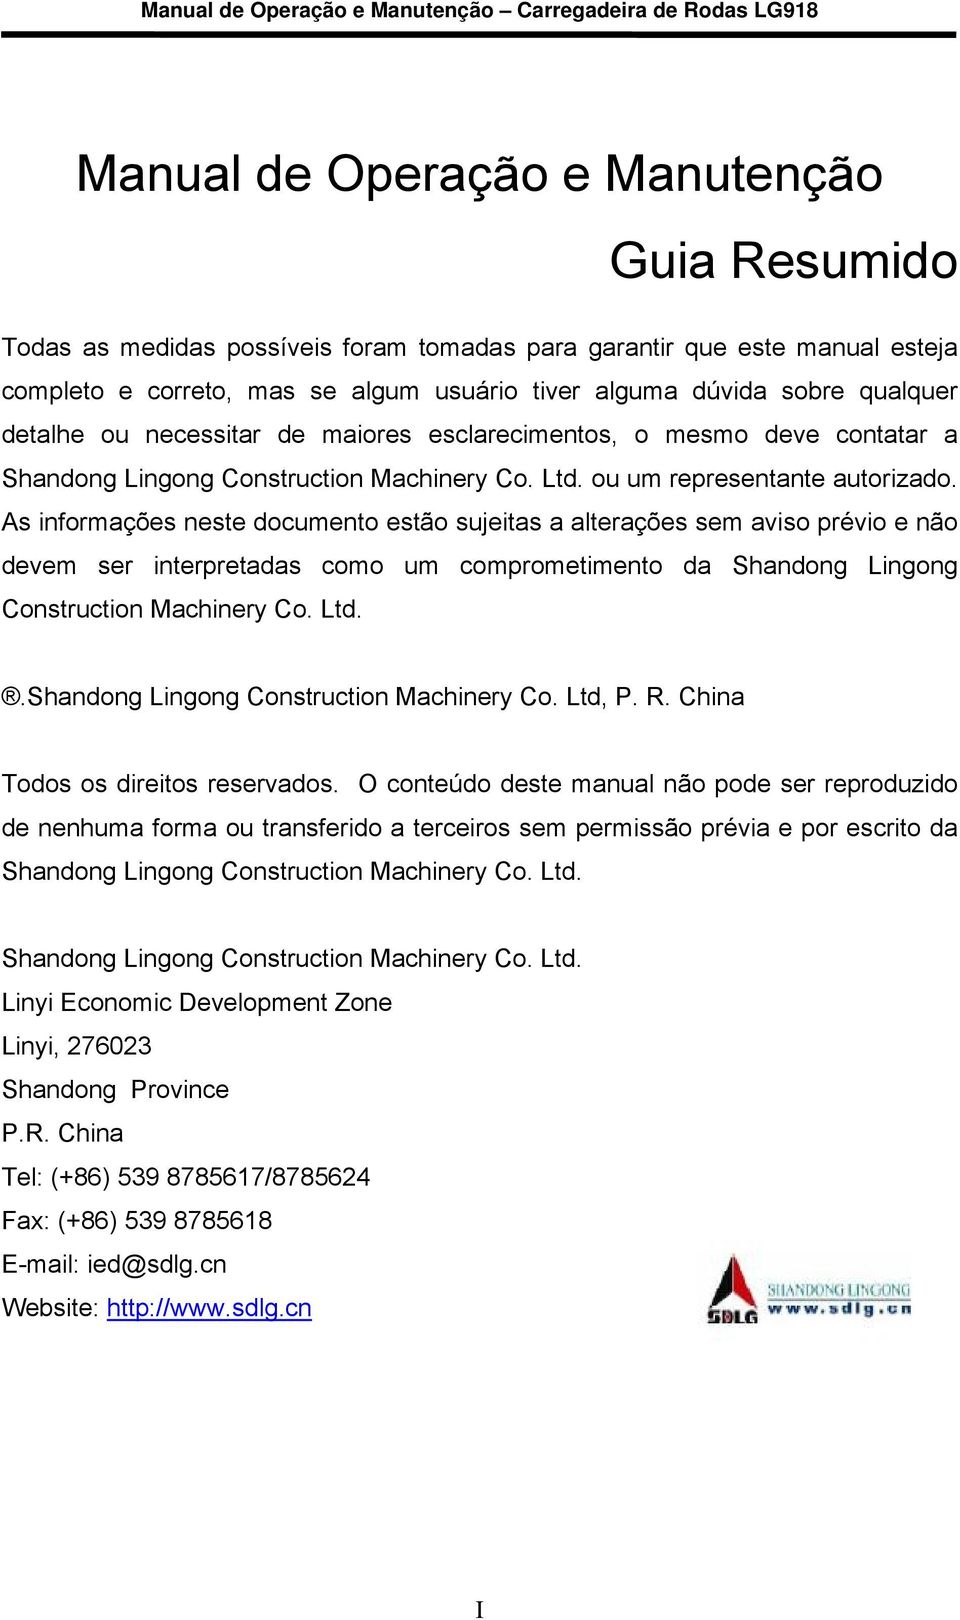 As informações neste documento estão sujeitas a alterações sem aviso prévio e não devem ser interpretadas como um comprometimento da Shandong Lingong Construction Machinery Co. Ltd.